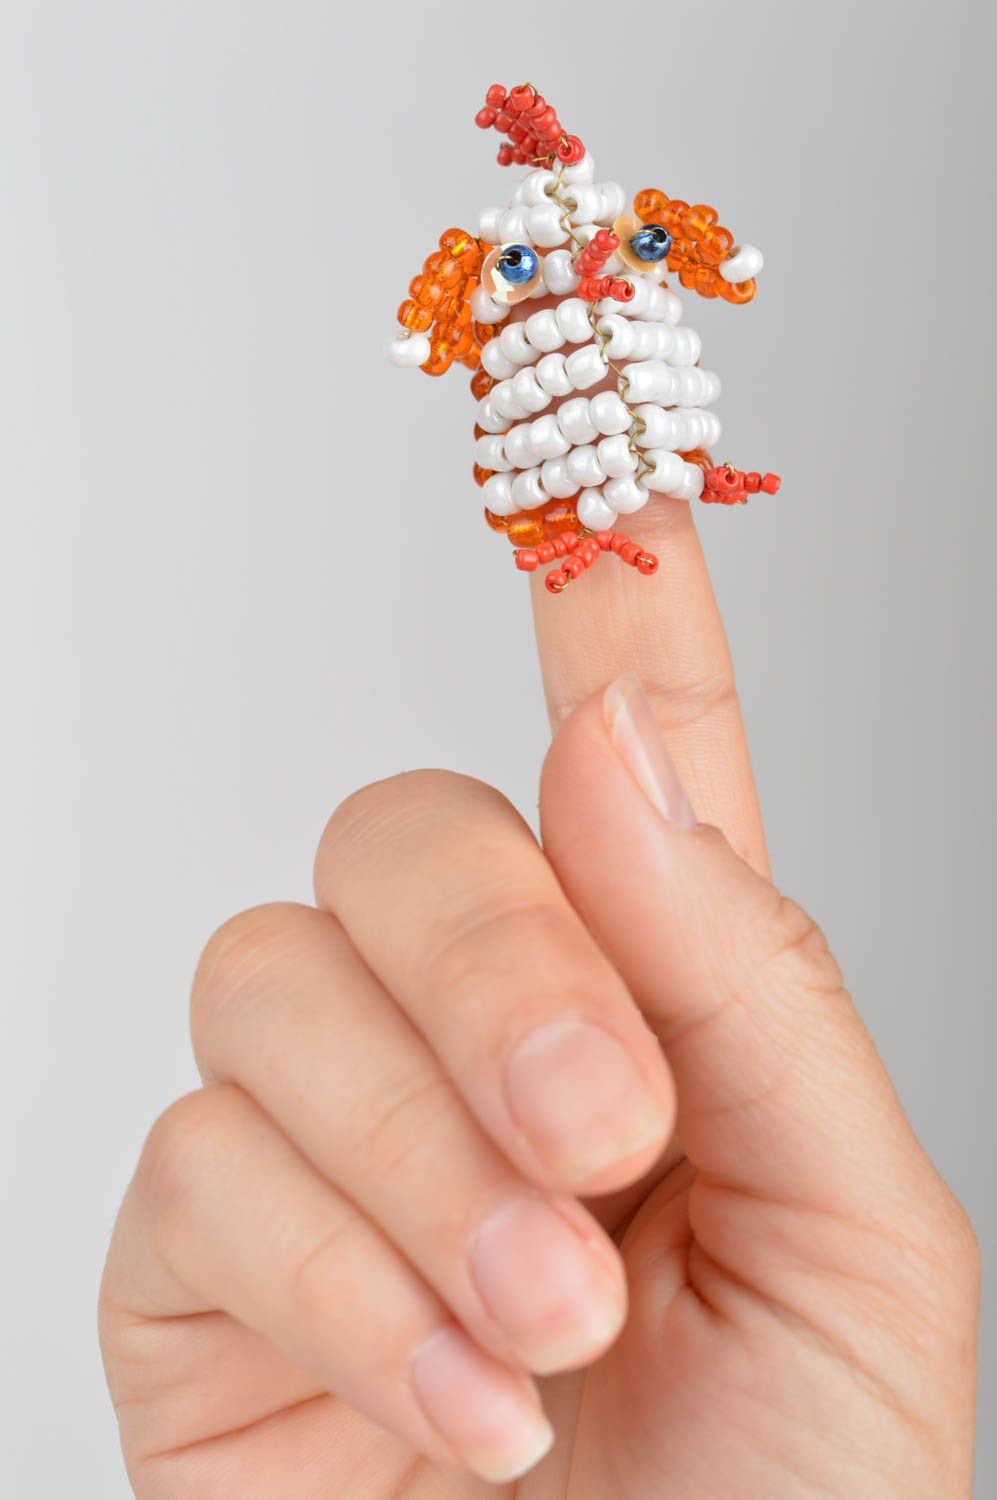 Handmade small designer bead woven animal finger puppet orange cockerel for kids photo 4